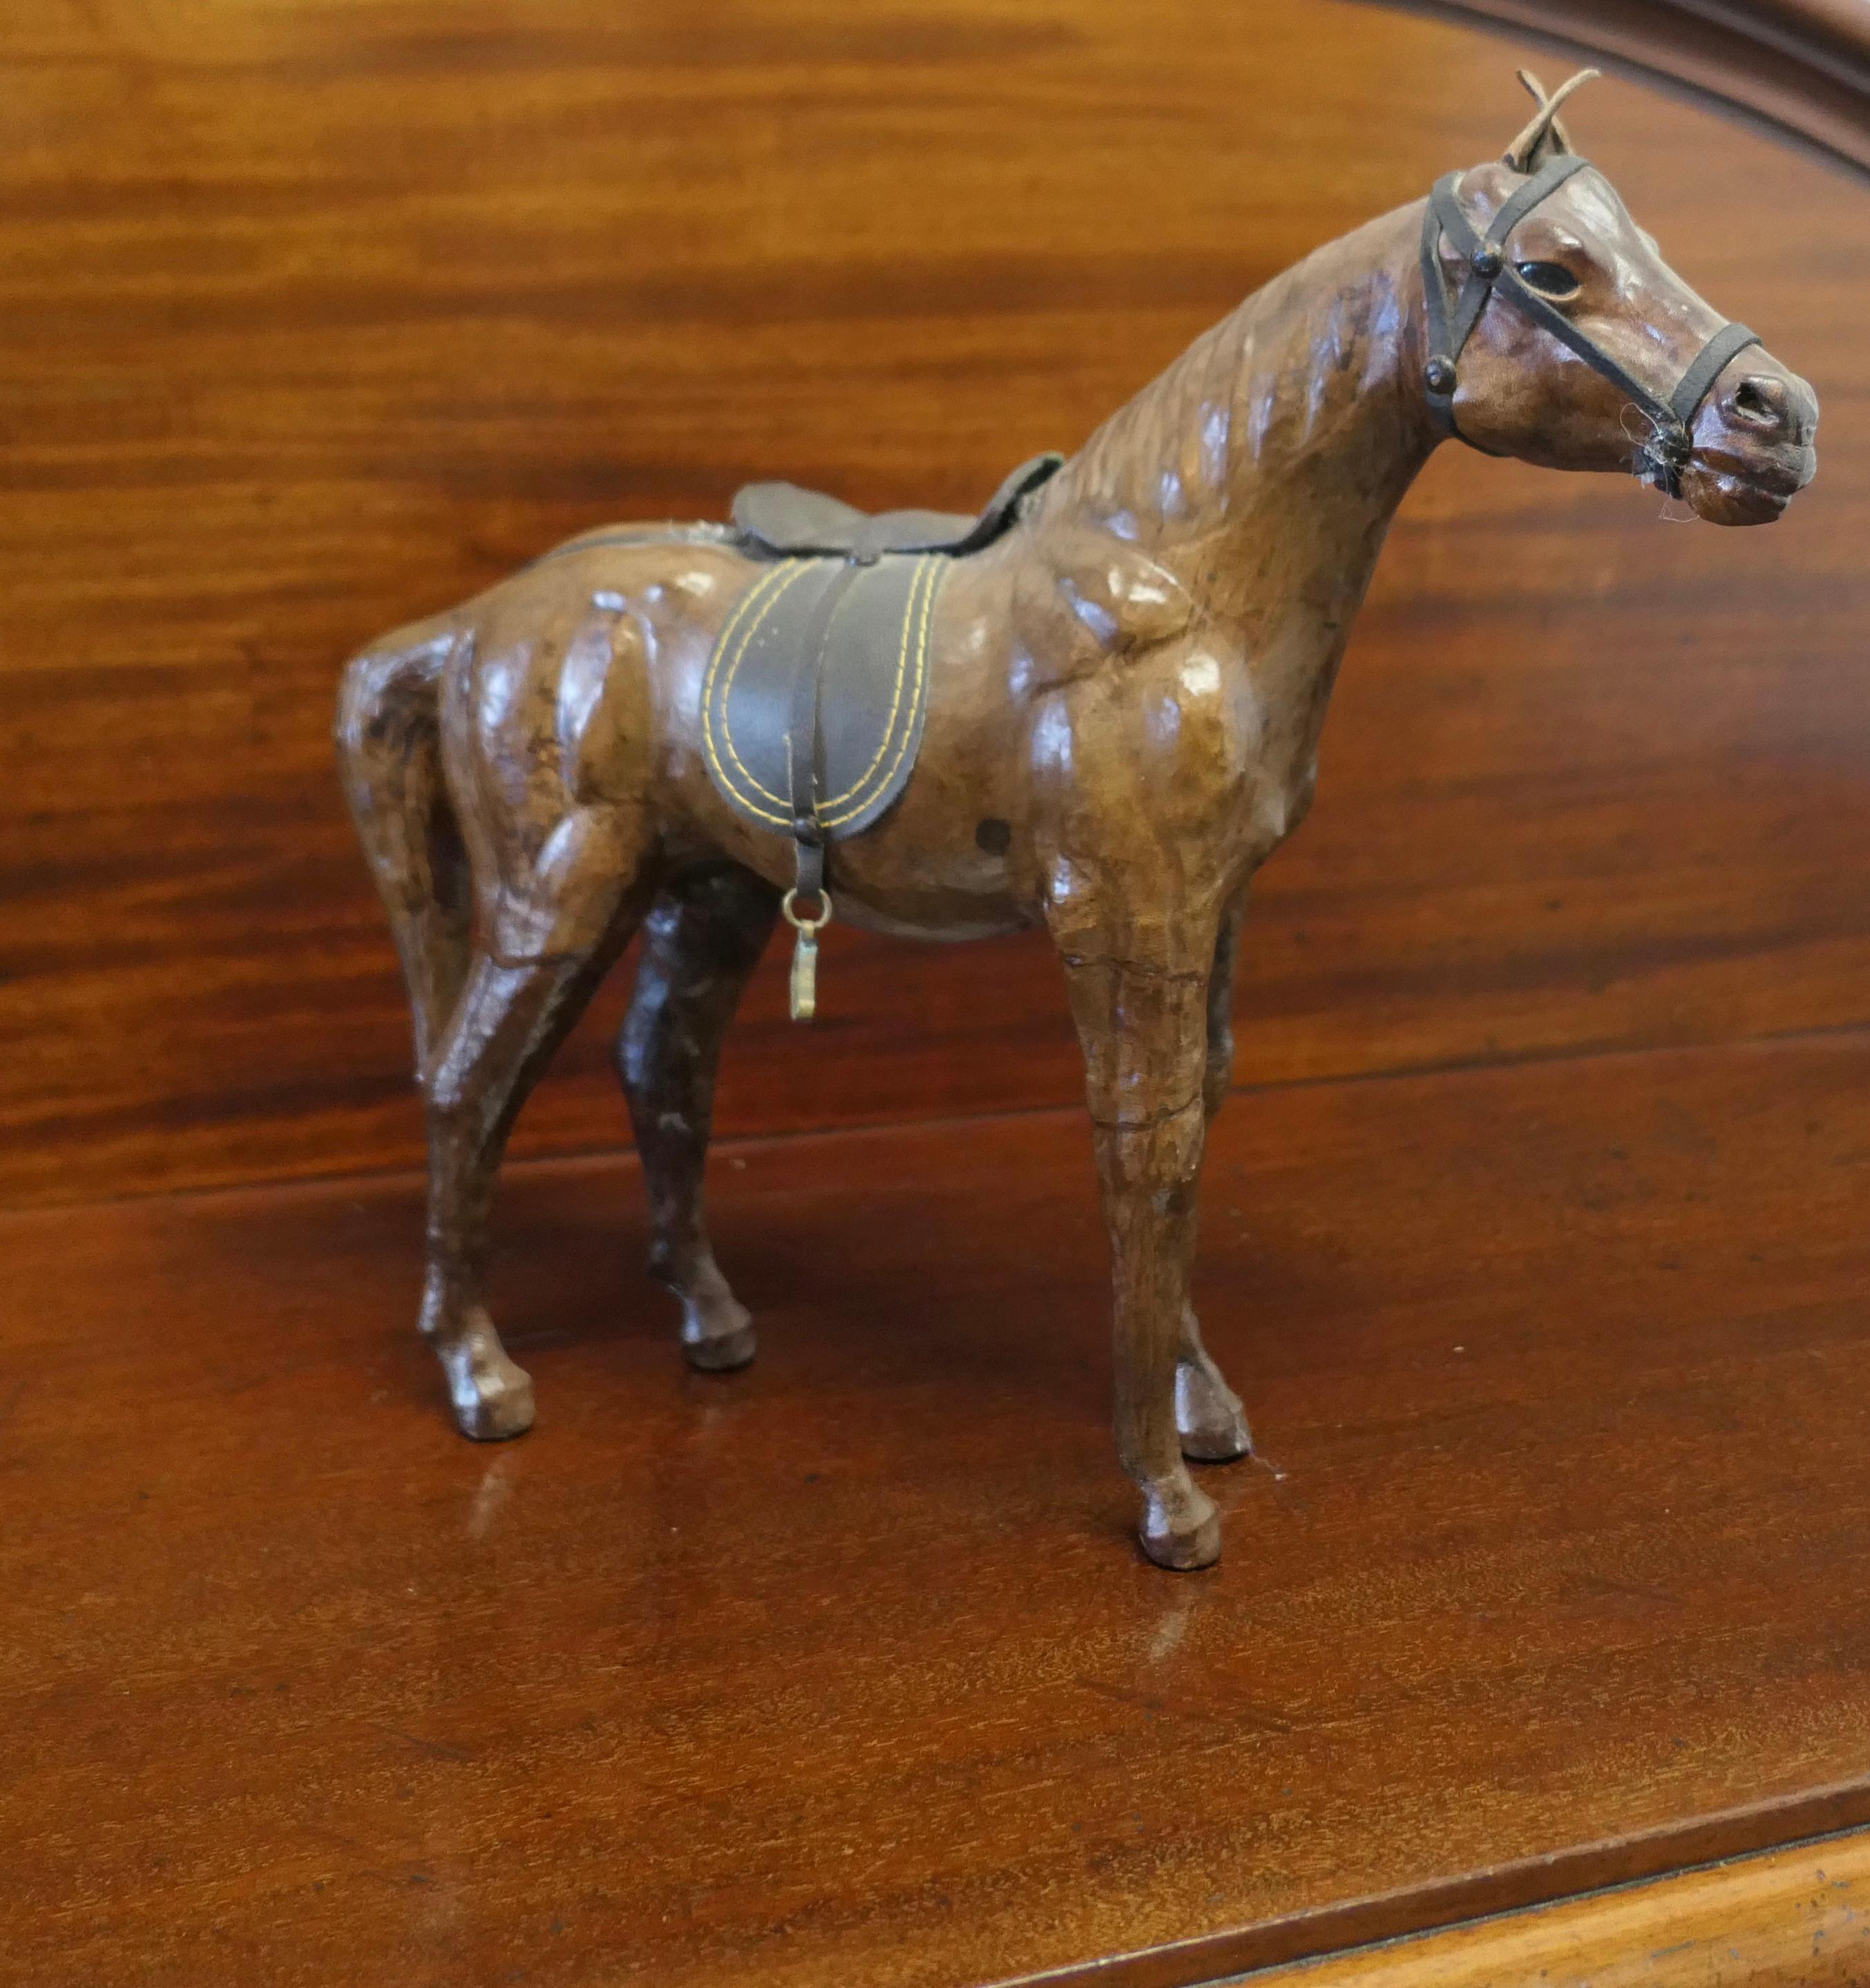 Kunsthandwerkliches Ledermodell eines Pferdes aus Leder

Dies ist ein seltener und schöner Fund, es wurde wahrscheinlich für Liberty gemacht, aber es gibt kein Label
Dieses hübsche Tier ist freistehend, hat einen Sattel, Zaumzeug und einen